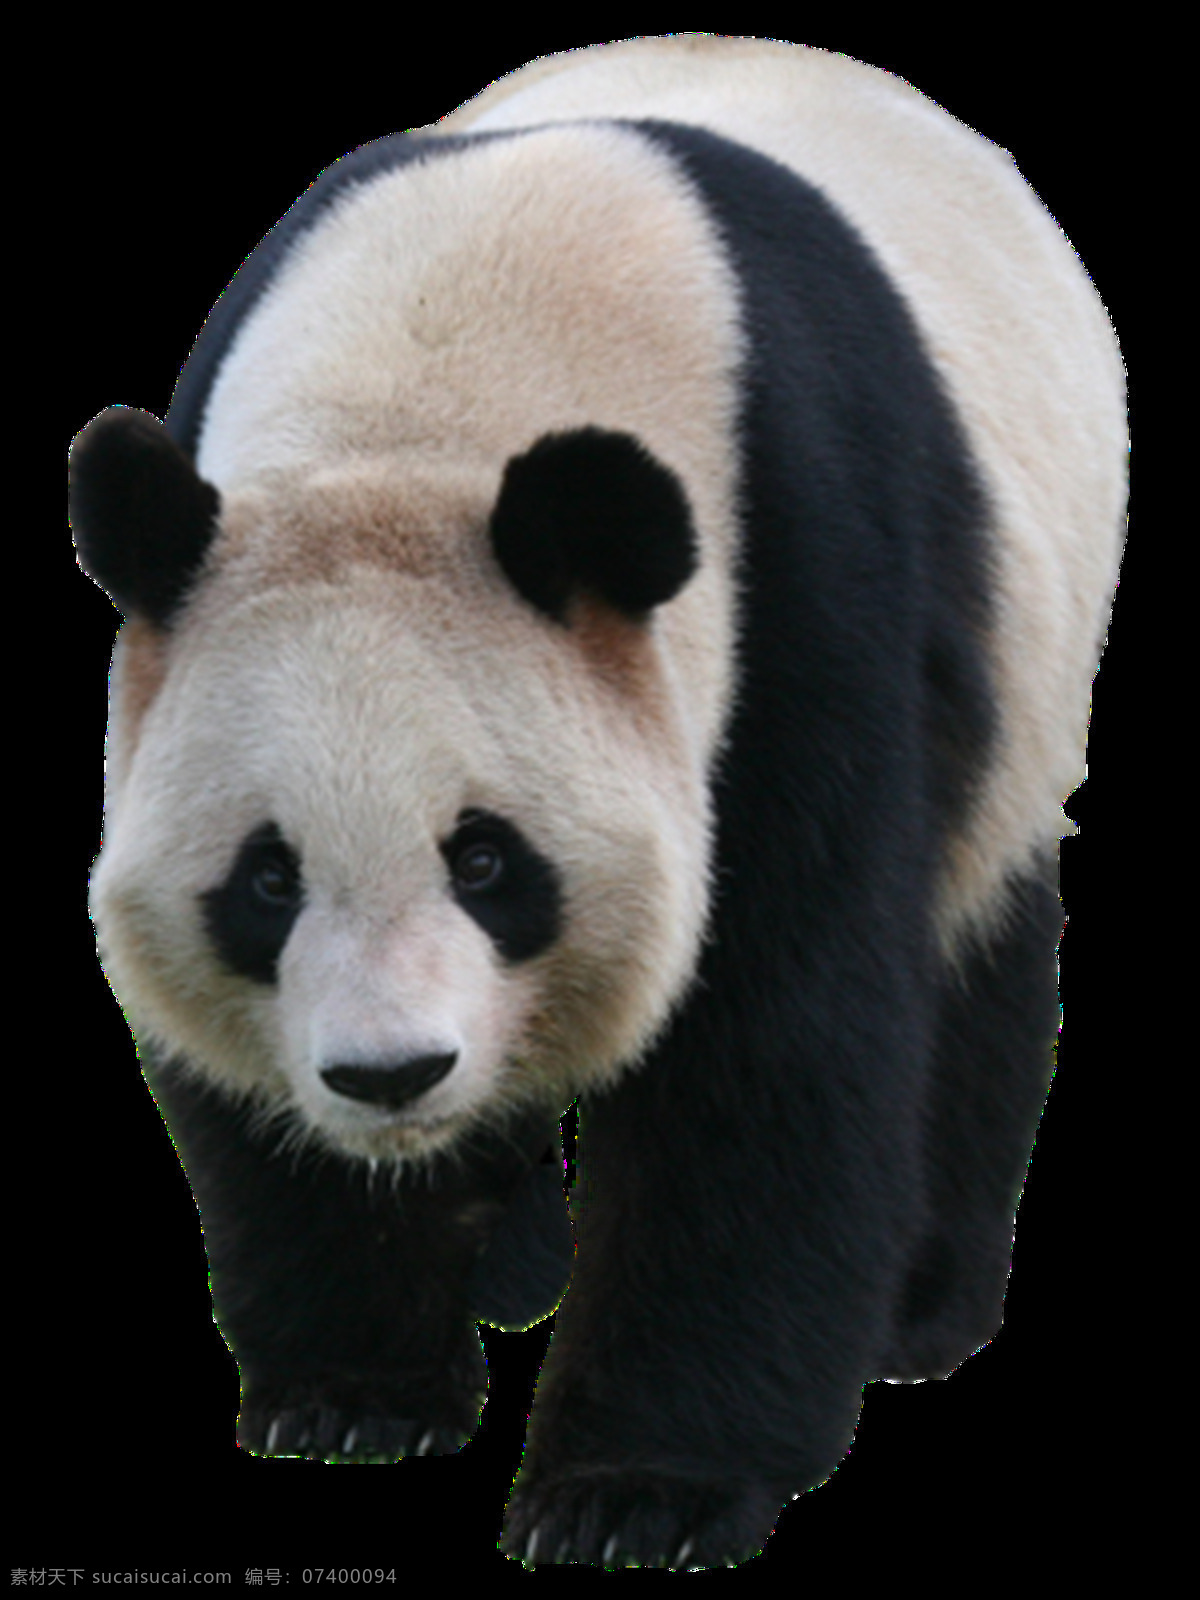 熊猫图片 熊猫 小熊猫 大熊猫 png图 透明图 免扣图 透明背景 透明底 抠图 生物世界 野生动物